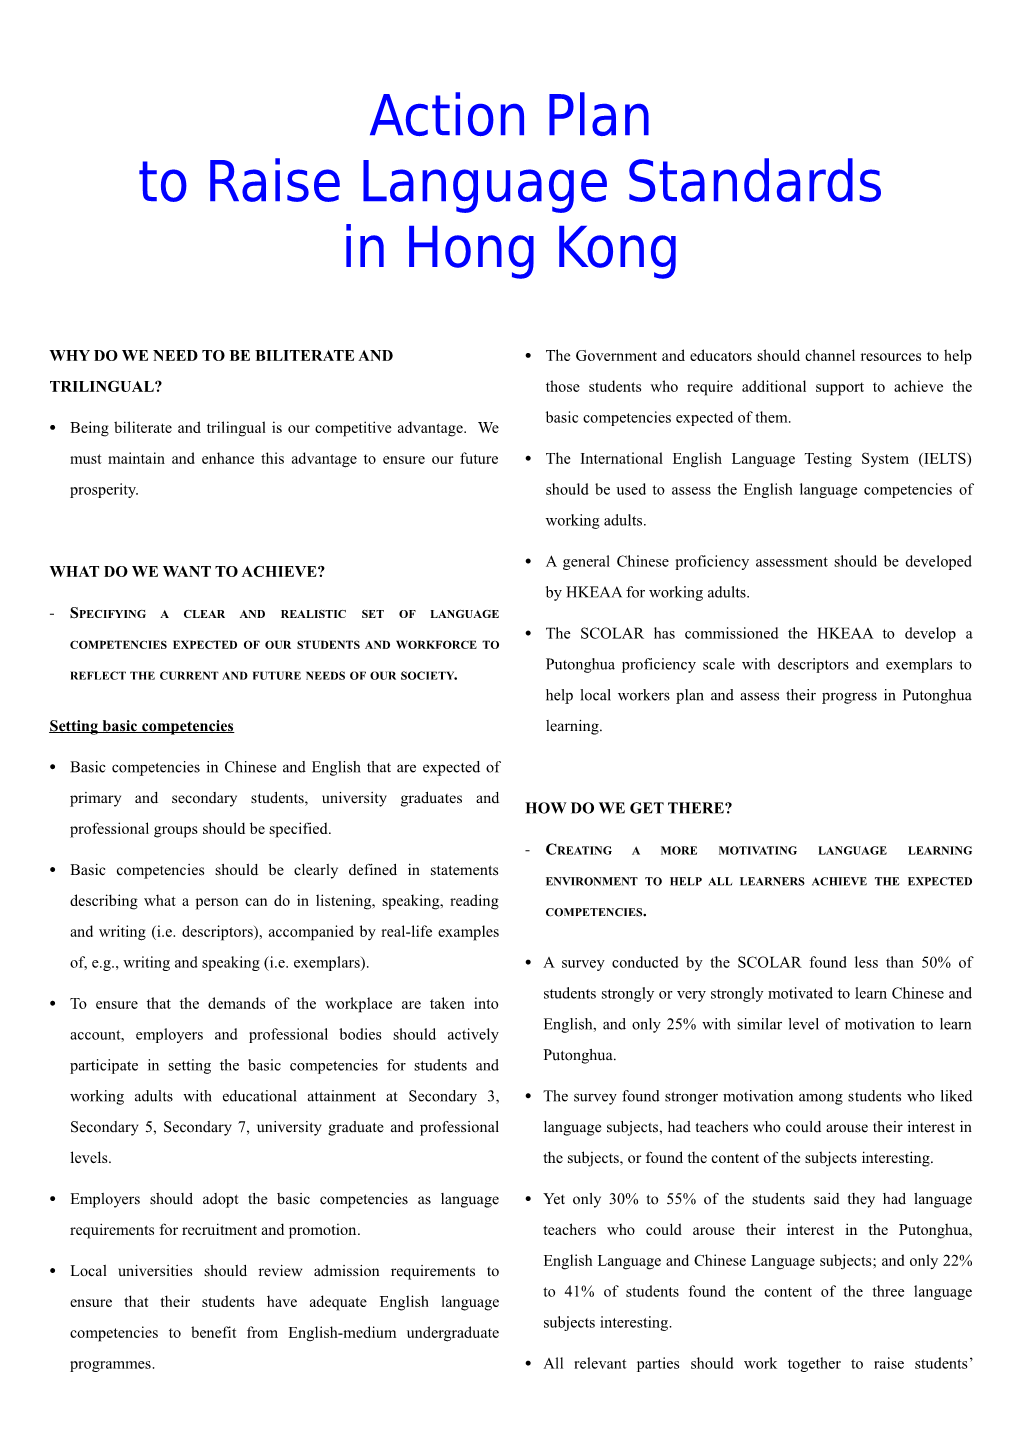 Action Plan to Raise Language Standards in Hong Kong